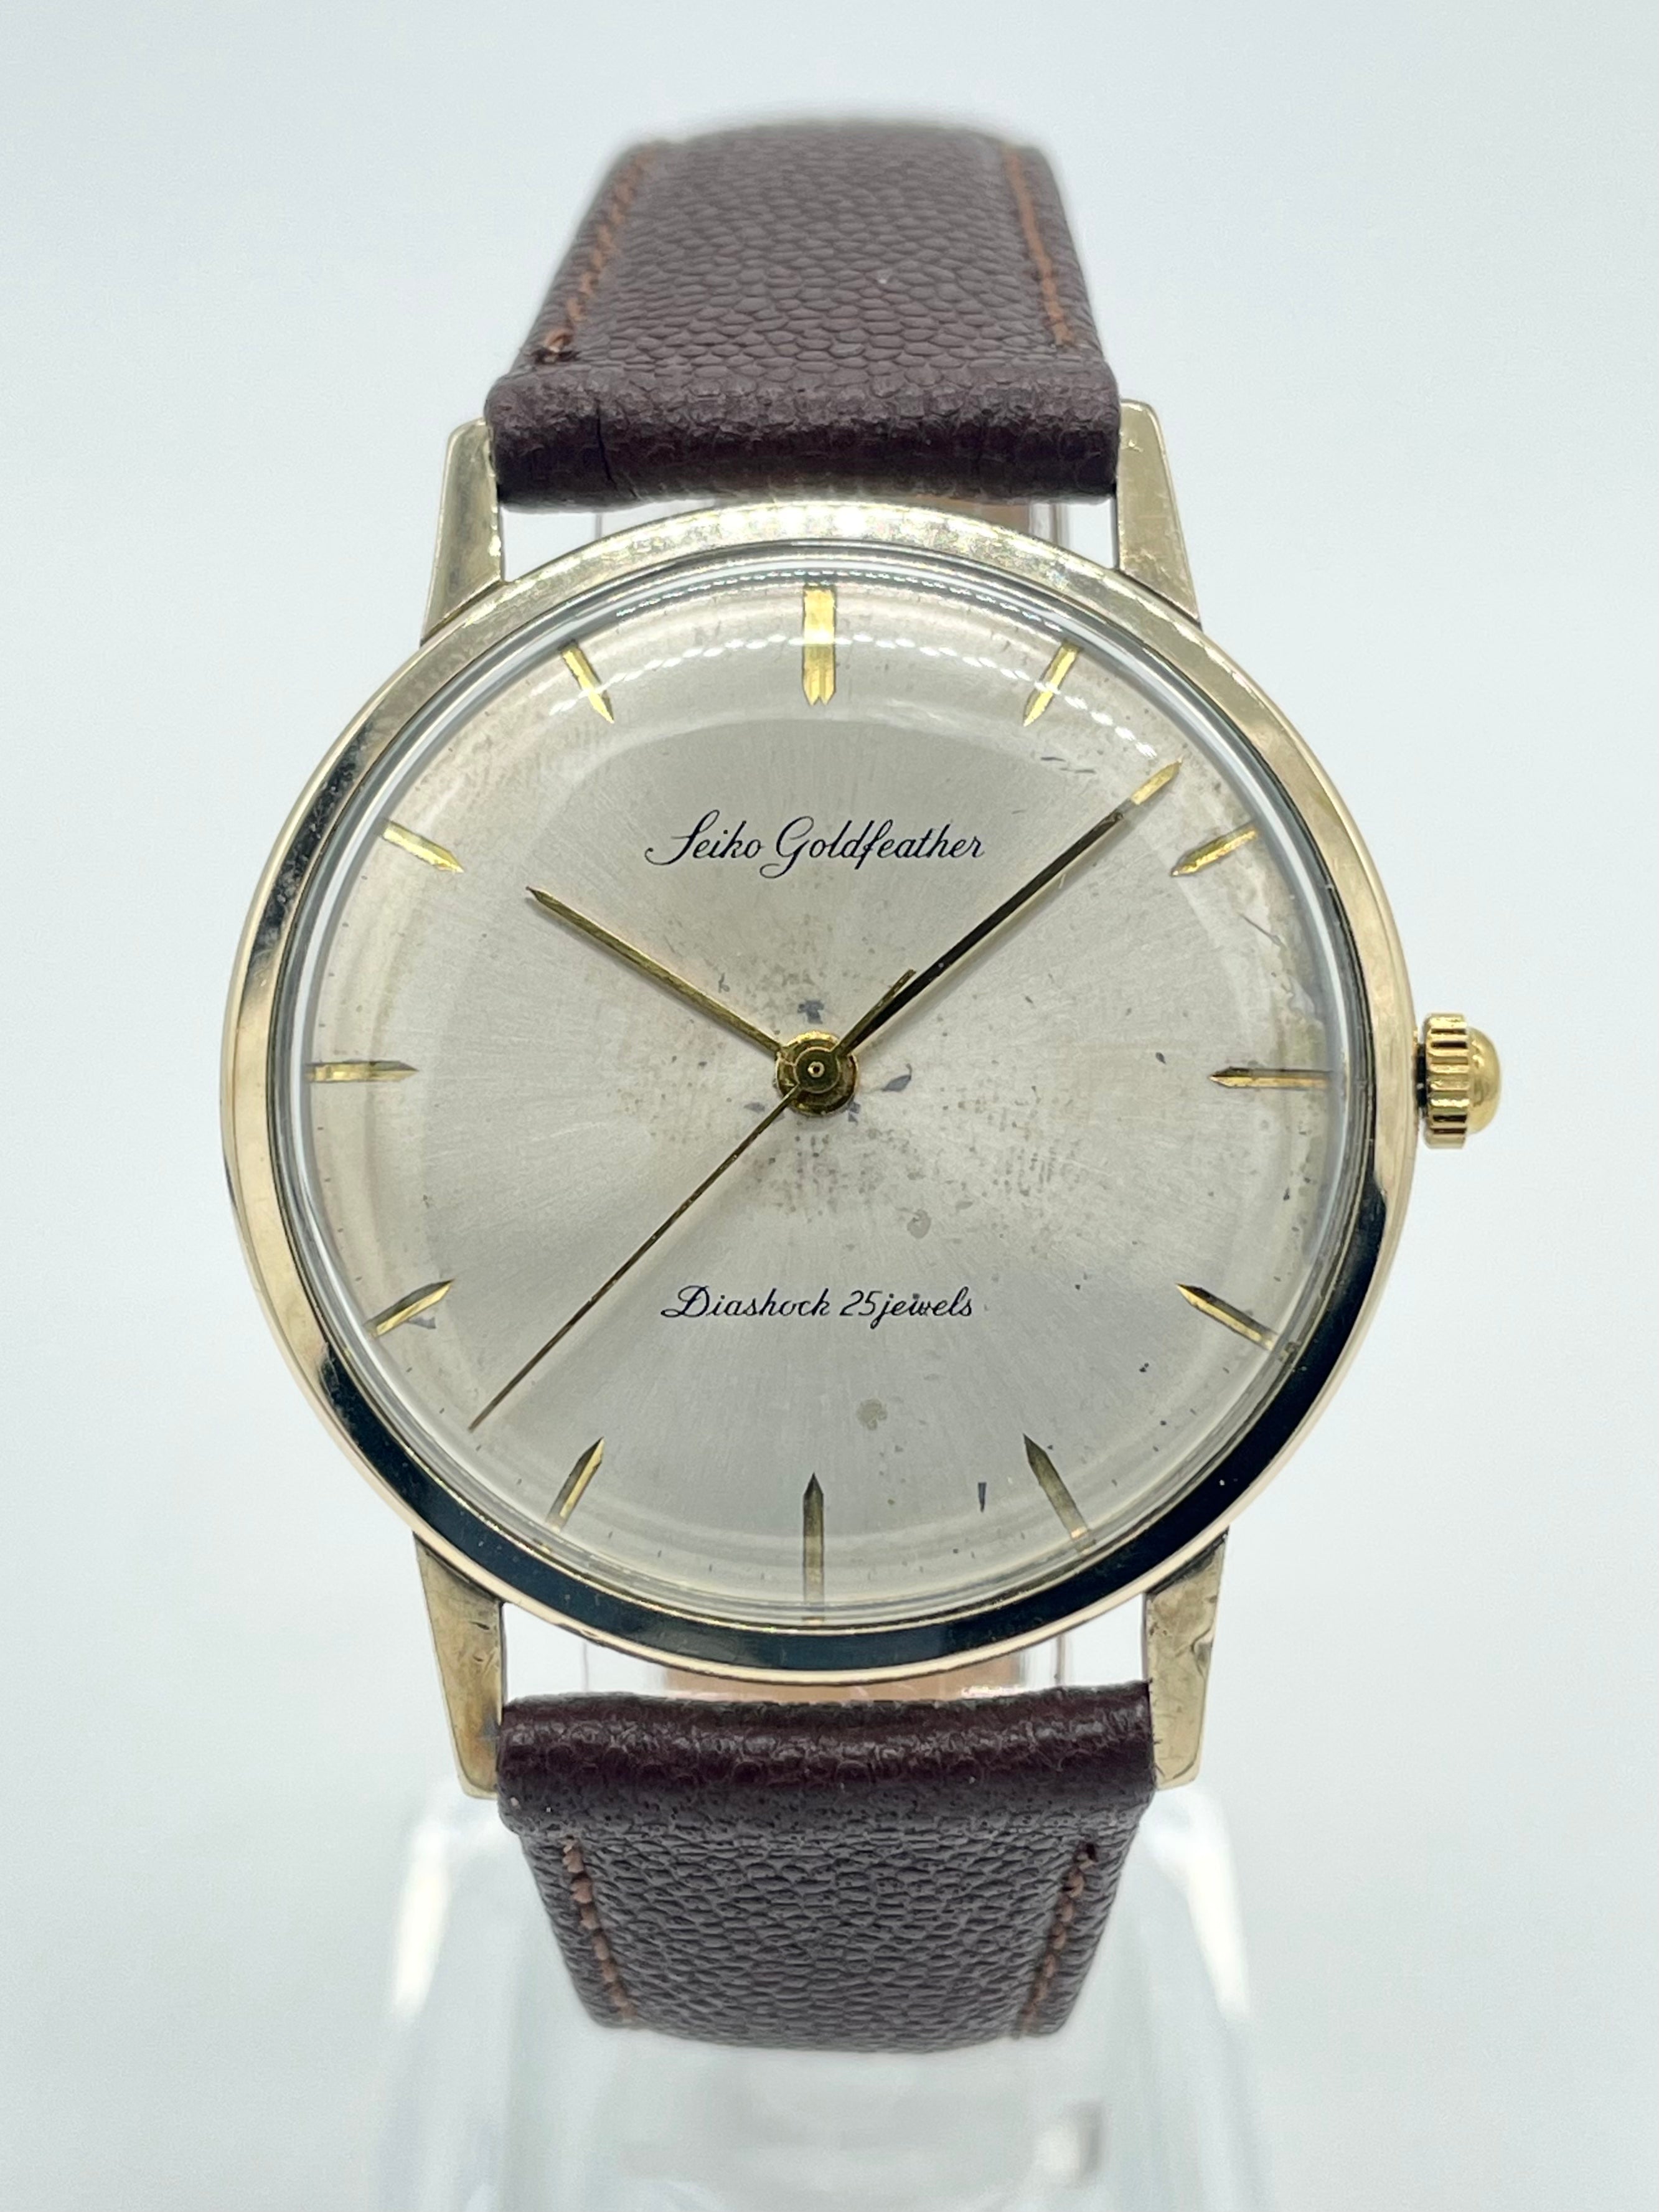 28,500円【超希少】未使用　セイコーゴールドフェザー 14k総金張り最高級薄型メンズ腕時計